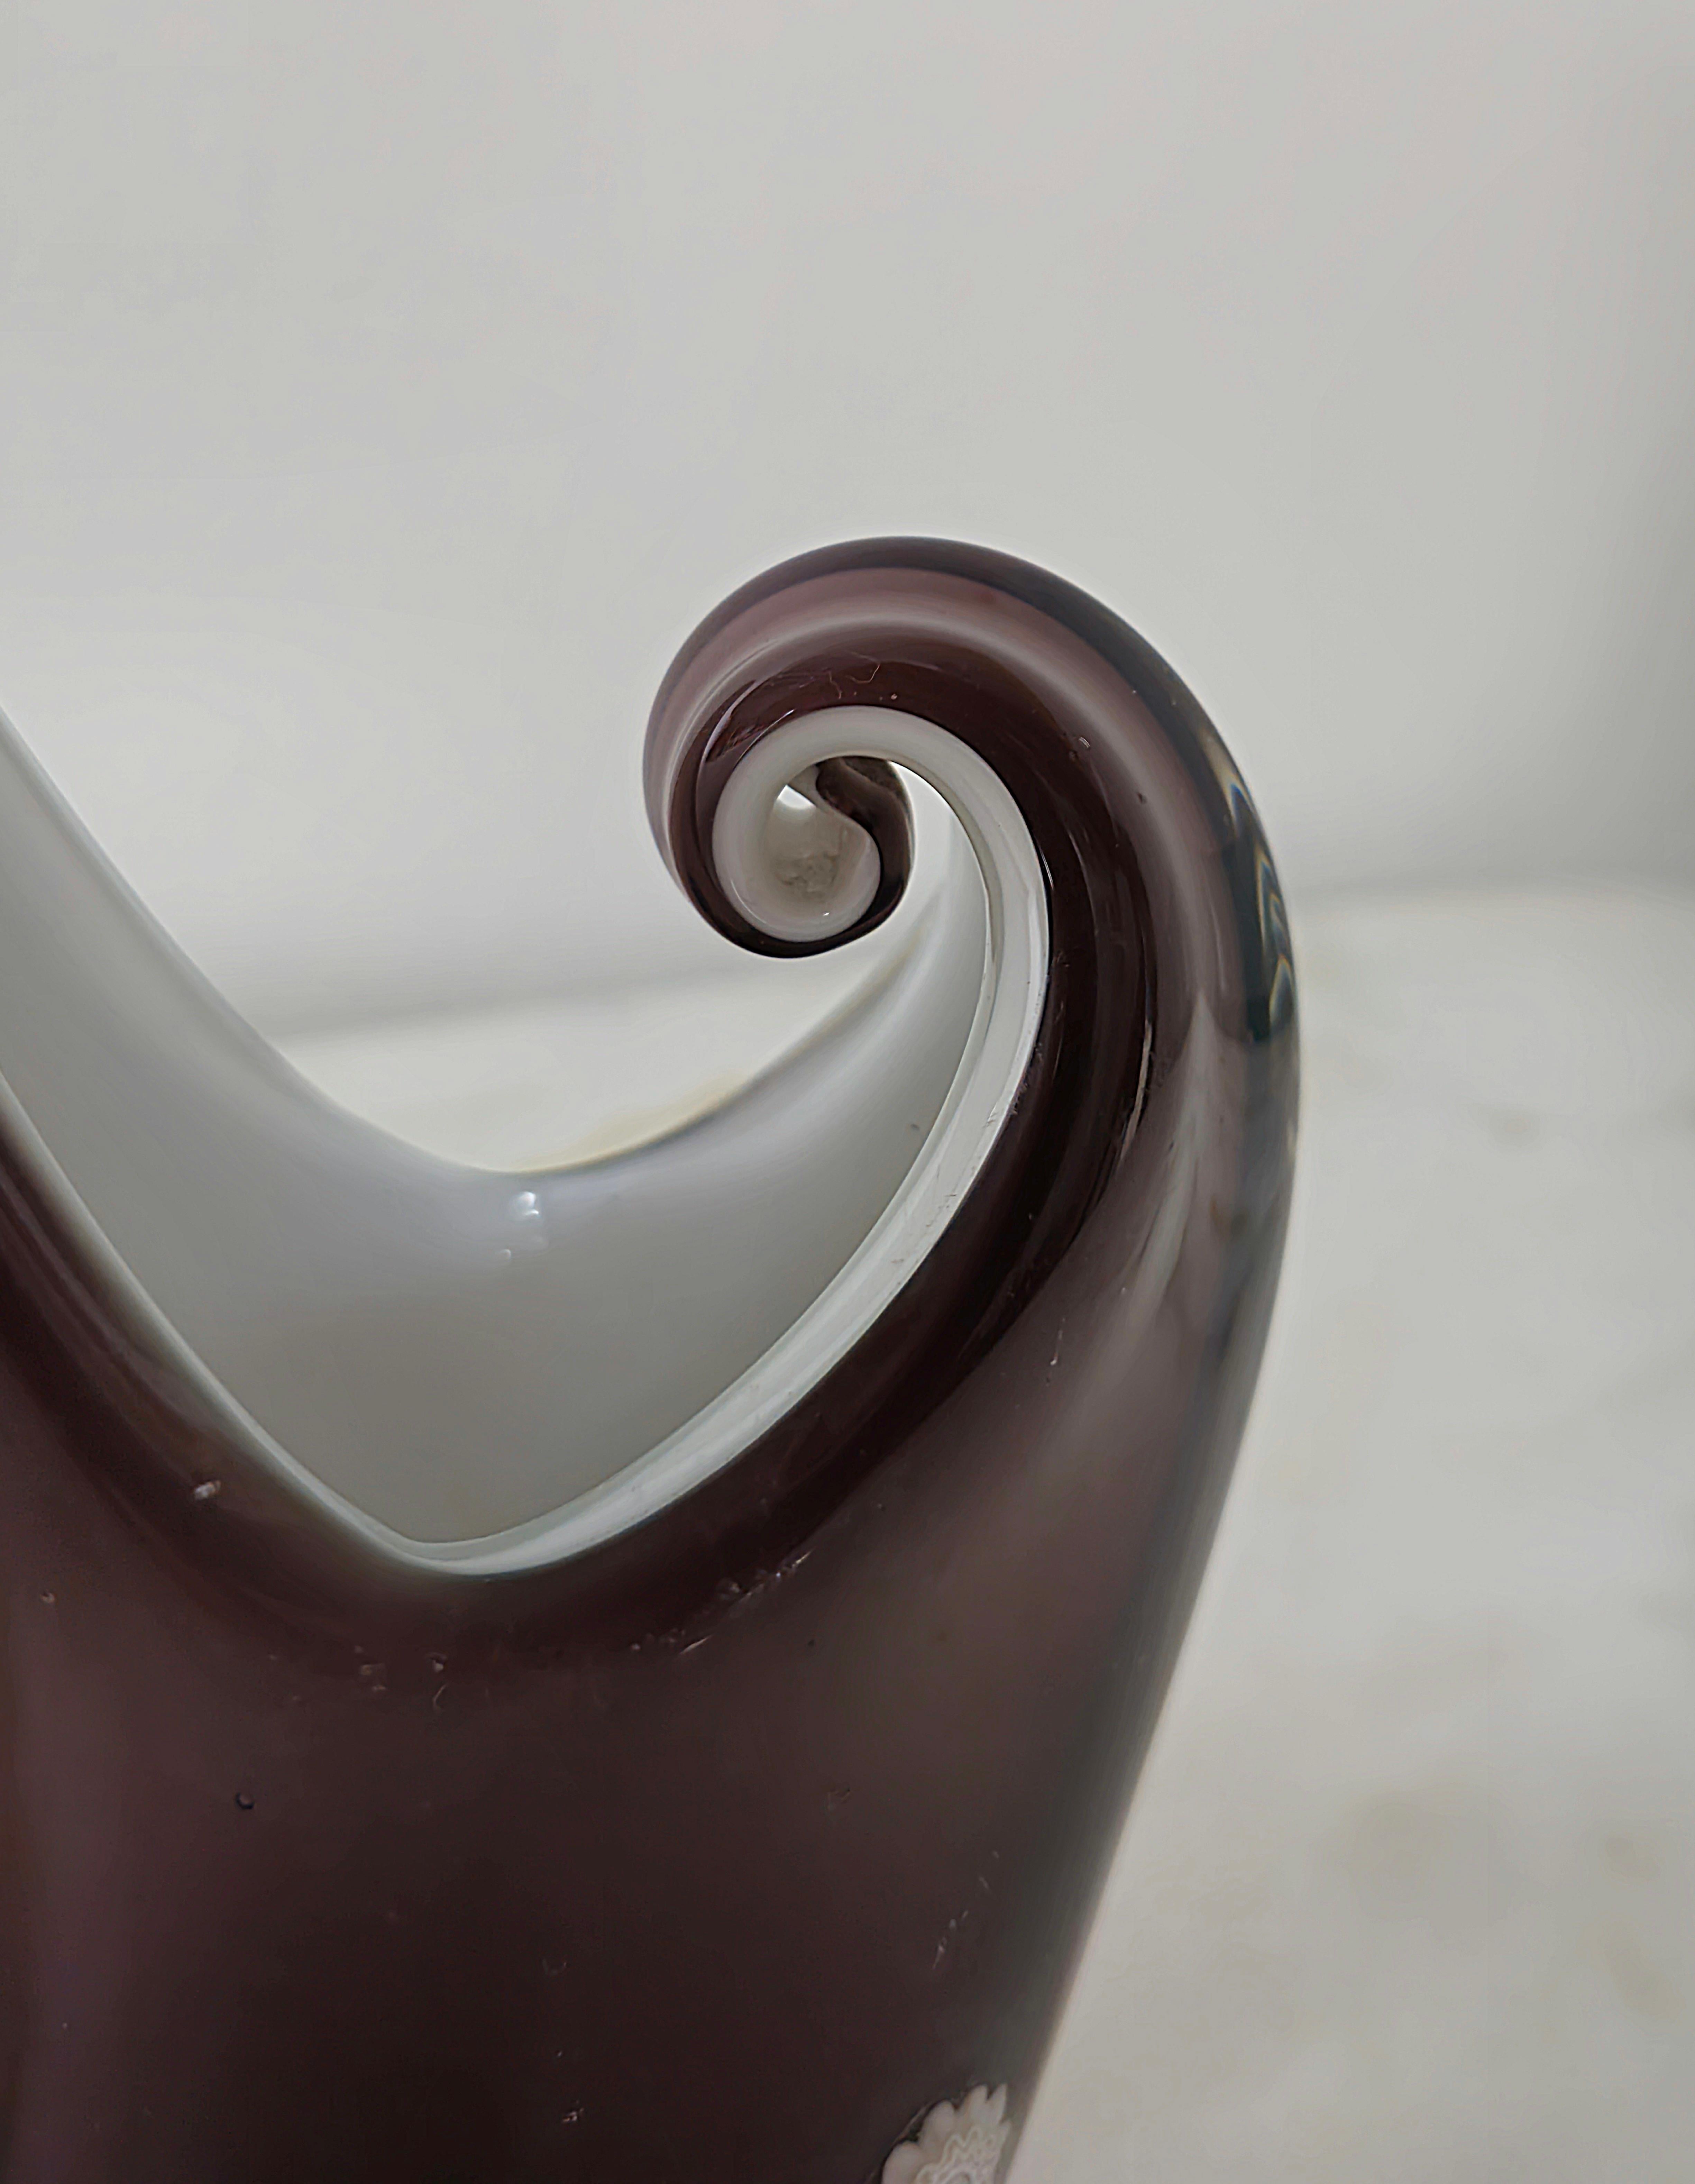 Vase/objet décoratif produit en Italie dans les années 1970 et attribué à la célèbre entreprise de Murano La murrina.
Le vase aux formes particulières a été réalisé en verre de Murano dans des tons d'aubergine, tandis que l'intérieur est dans des